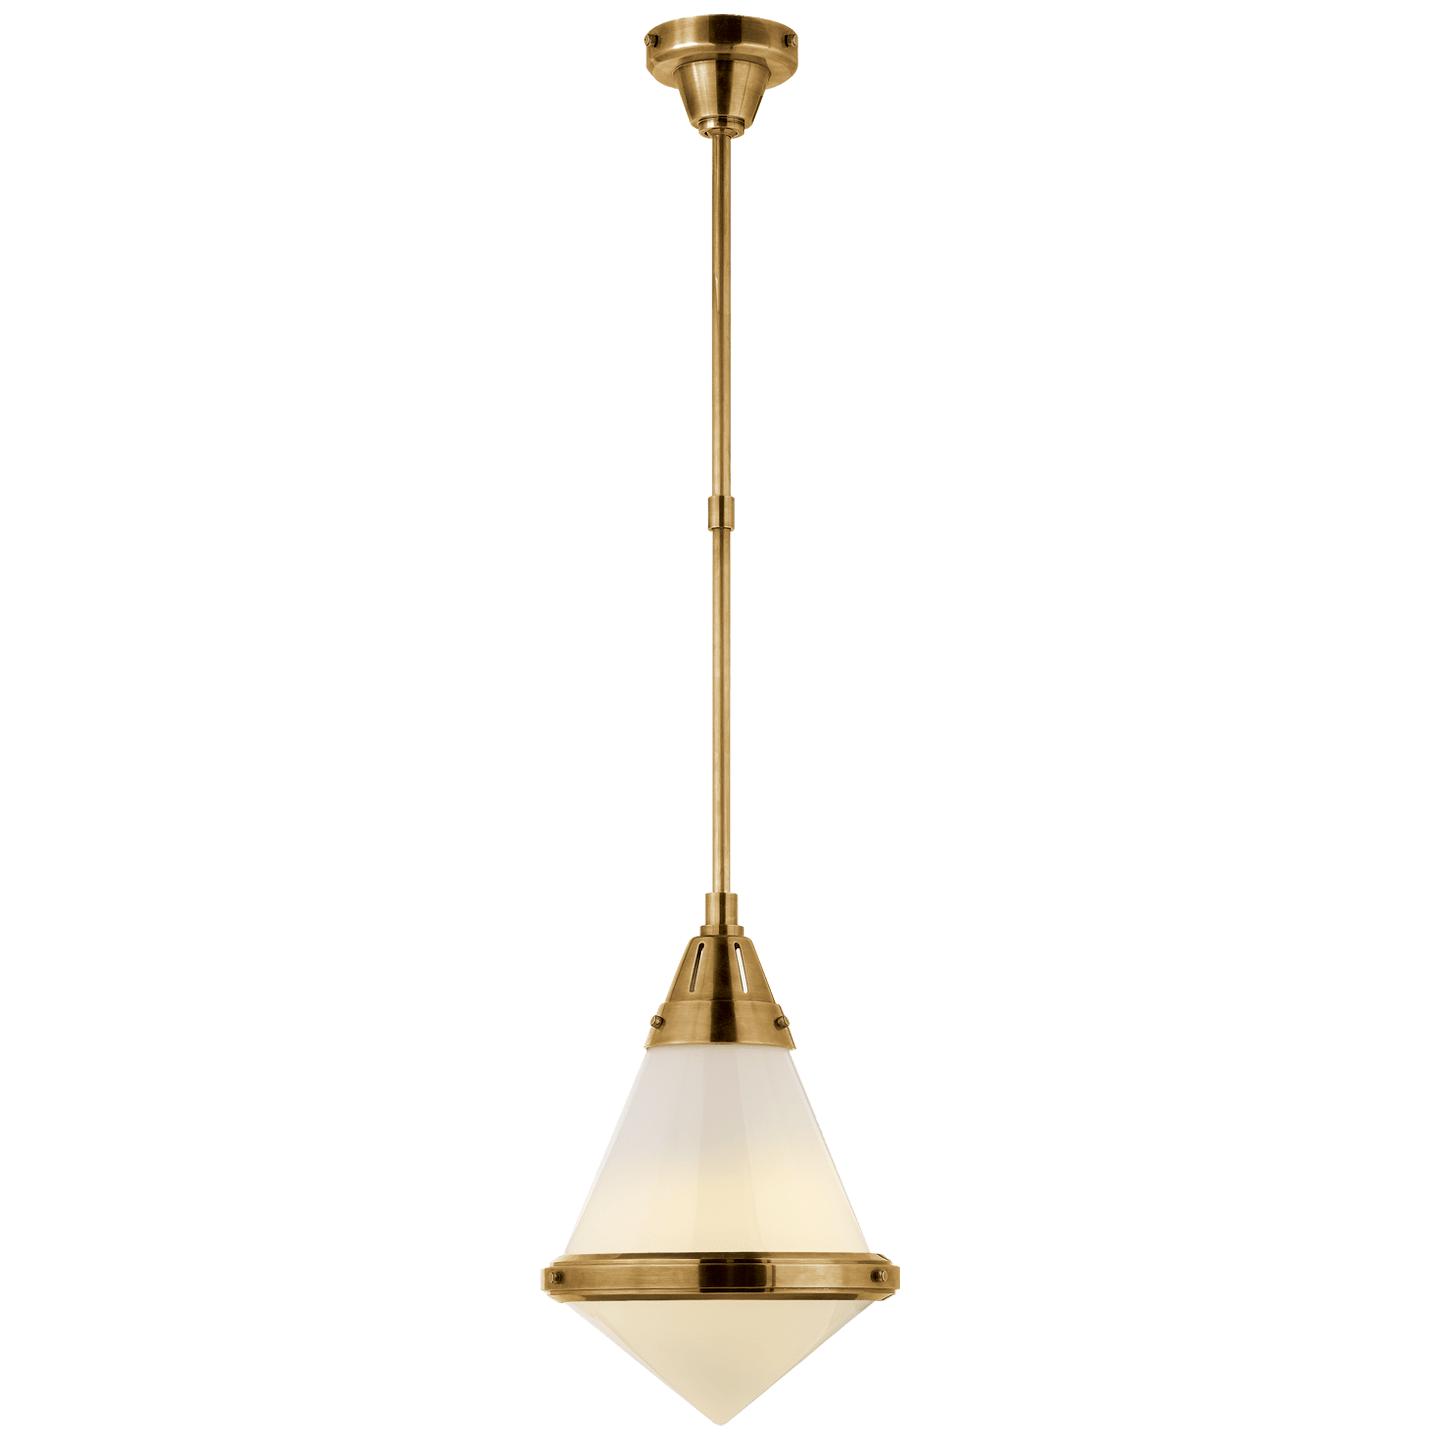 Купить Подвесной светильник Gale Small Pendant в интернет-магазине roooms.ru